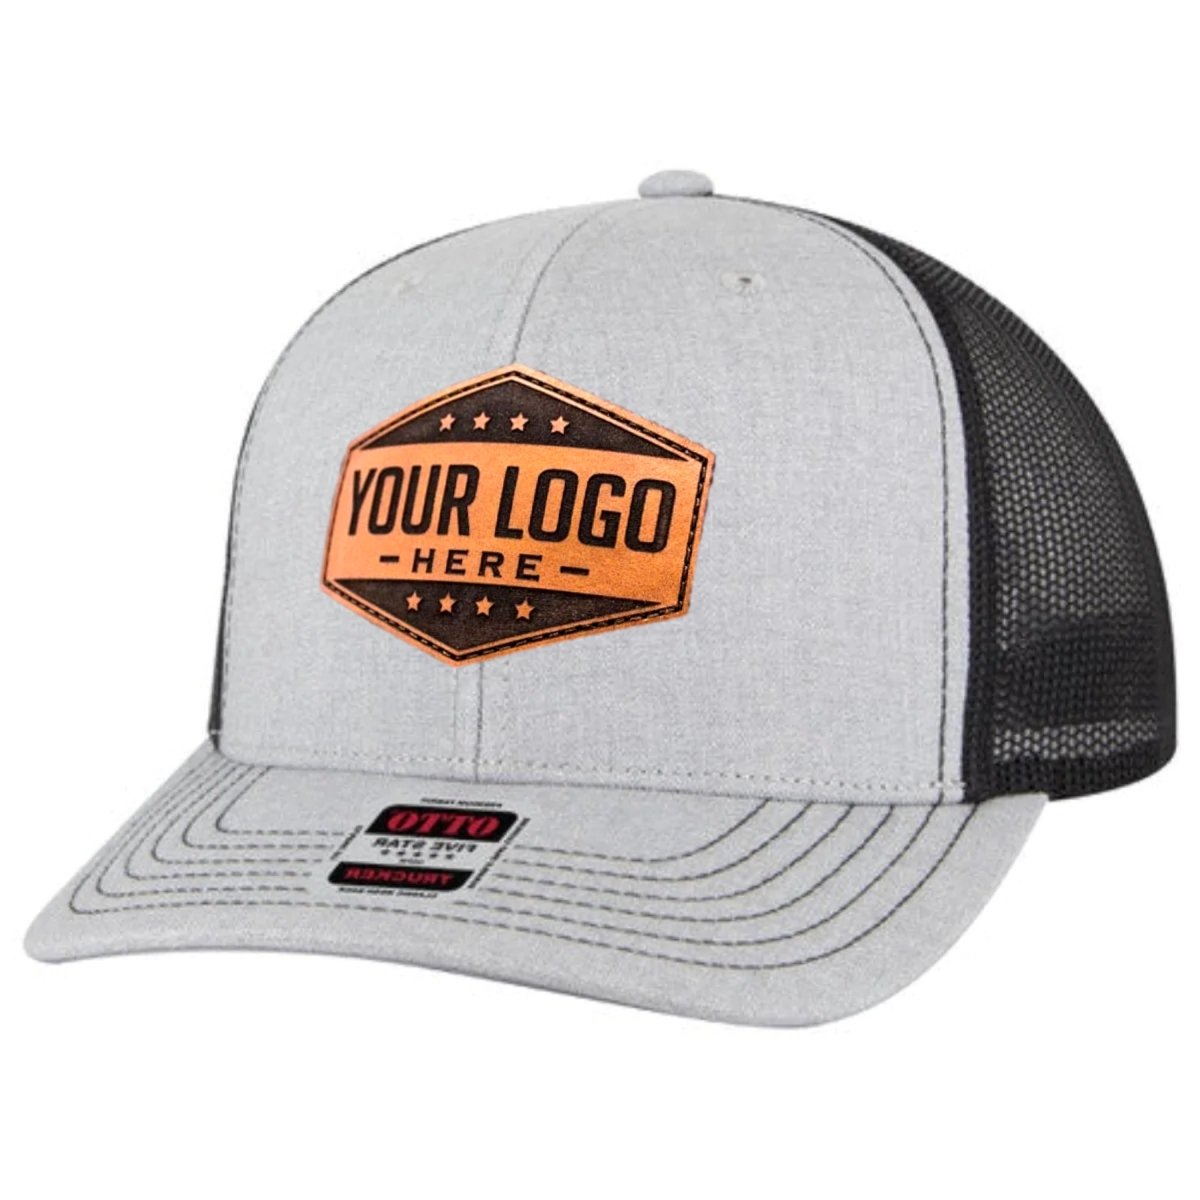 OTTO - 6 Panel Mid Profile Mesh Back Trucker Hat - The Luua Company